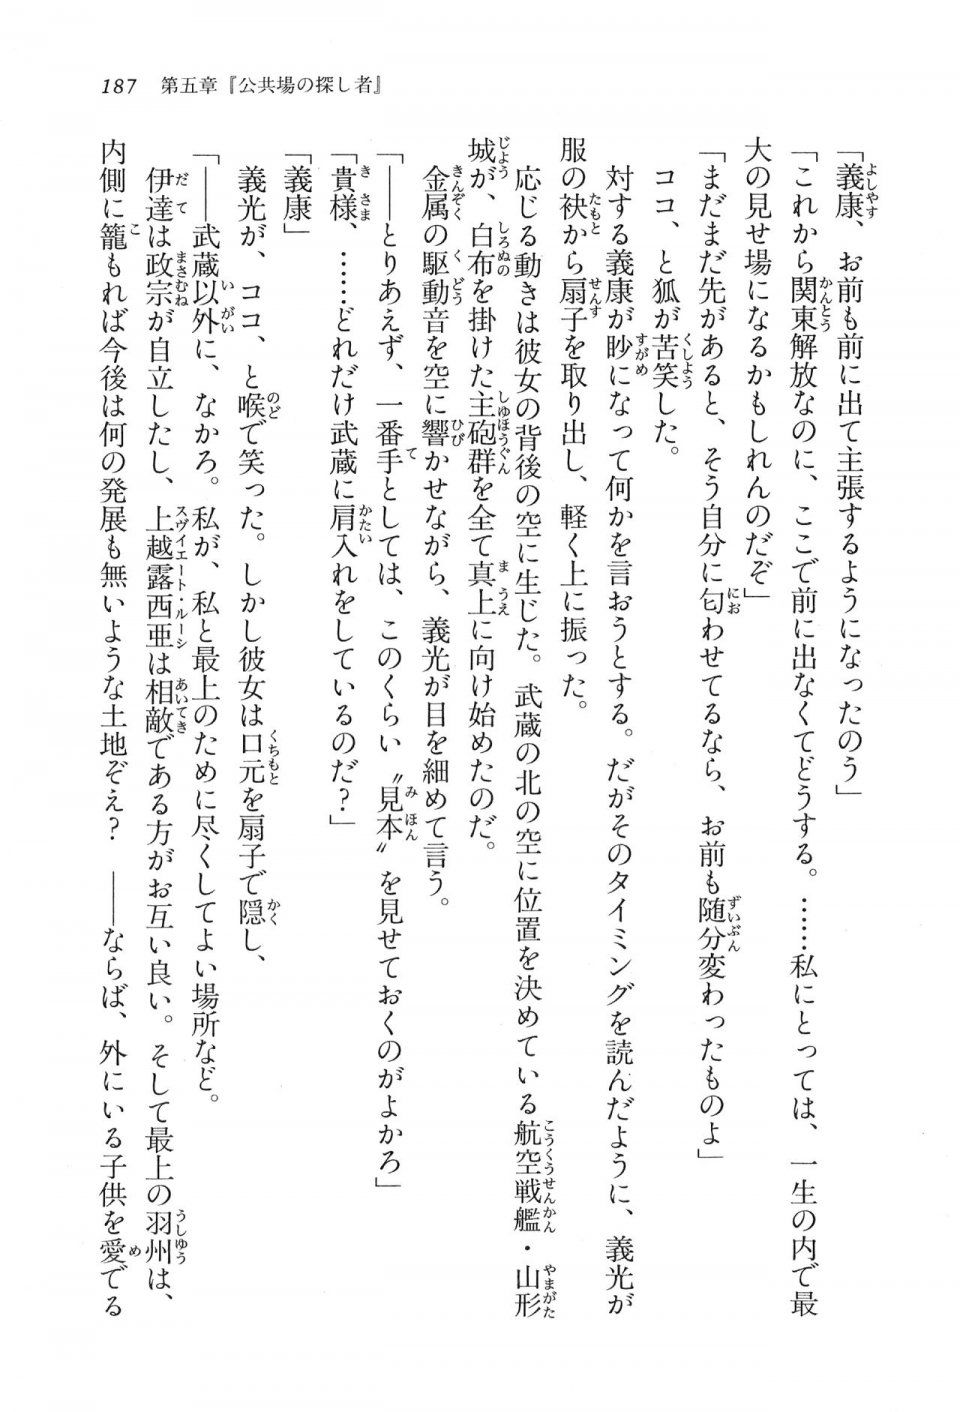 Kyoukai Senjou no Horizon LN Vol 16(7A) - Photo #187